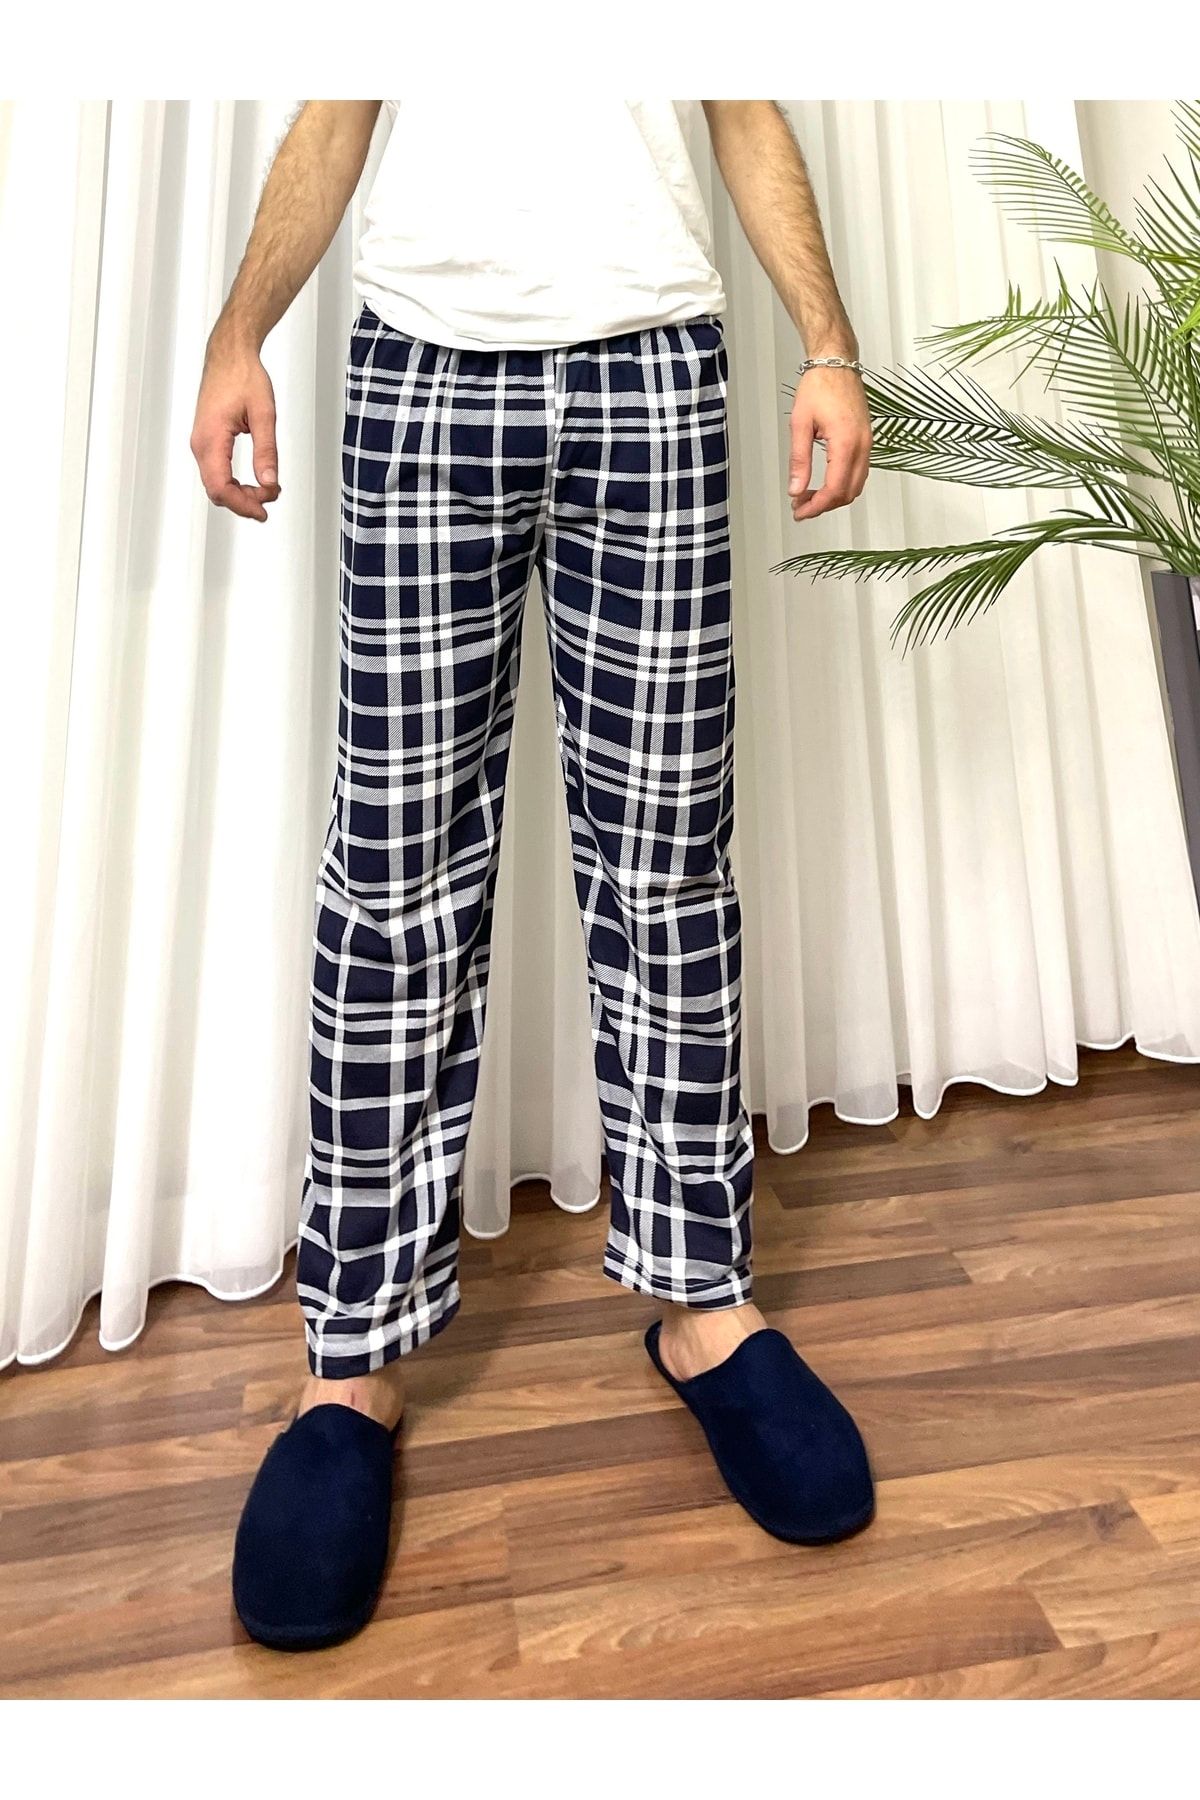 Betimoda Erkek Pamuklu Cepsiz Ekose Desenli Pijama Altı Eşofman Lacivert Beyaz Kareli